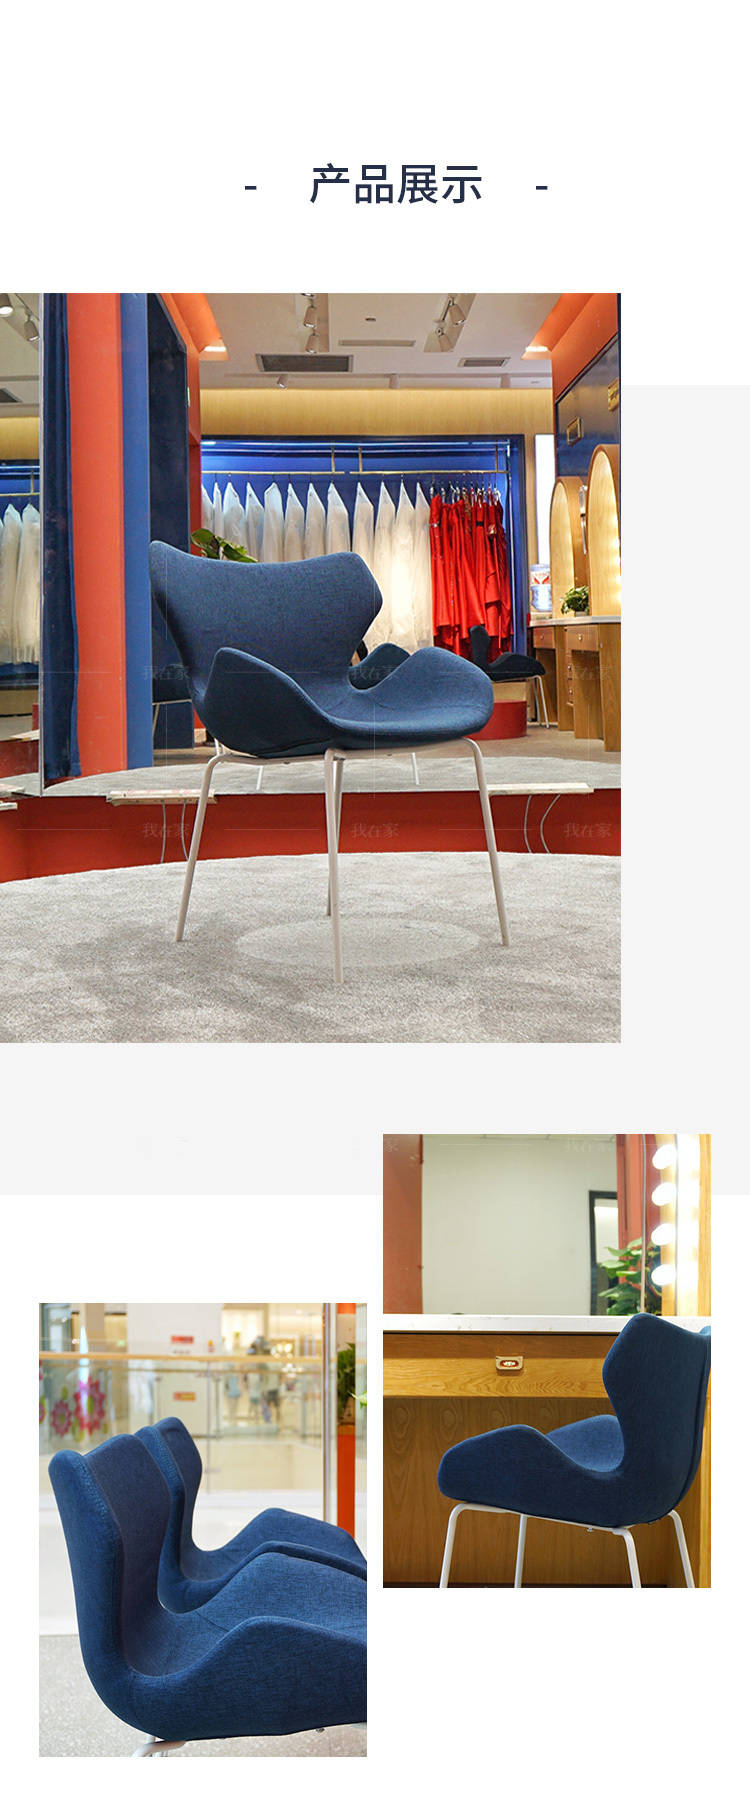 色彩北欧风格天鹅椅的家具详细介绍